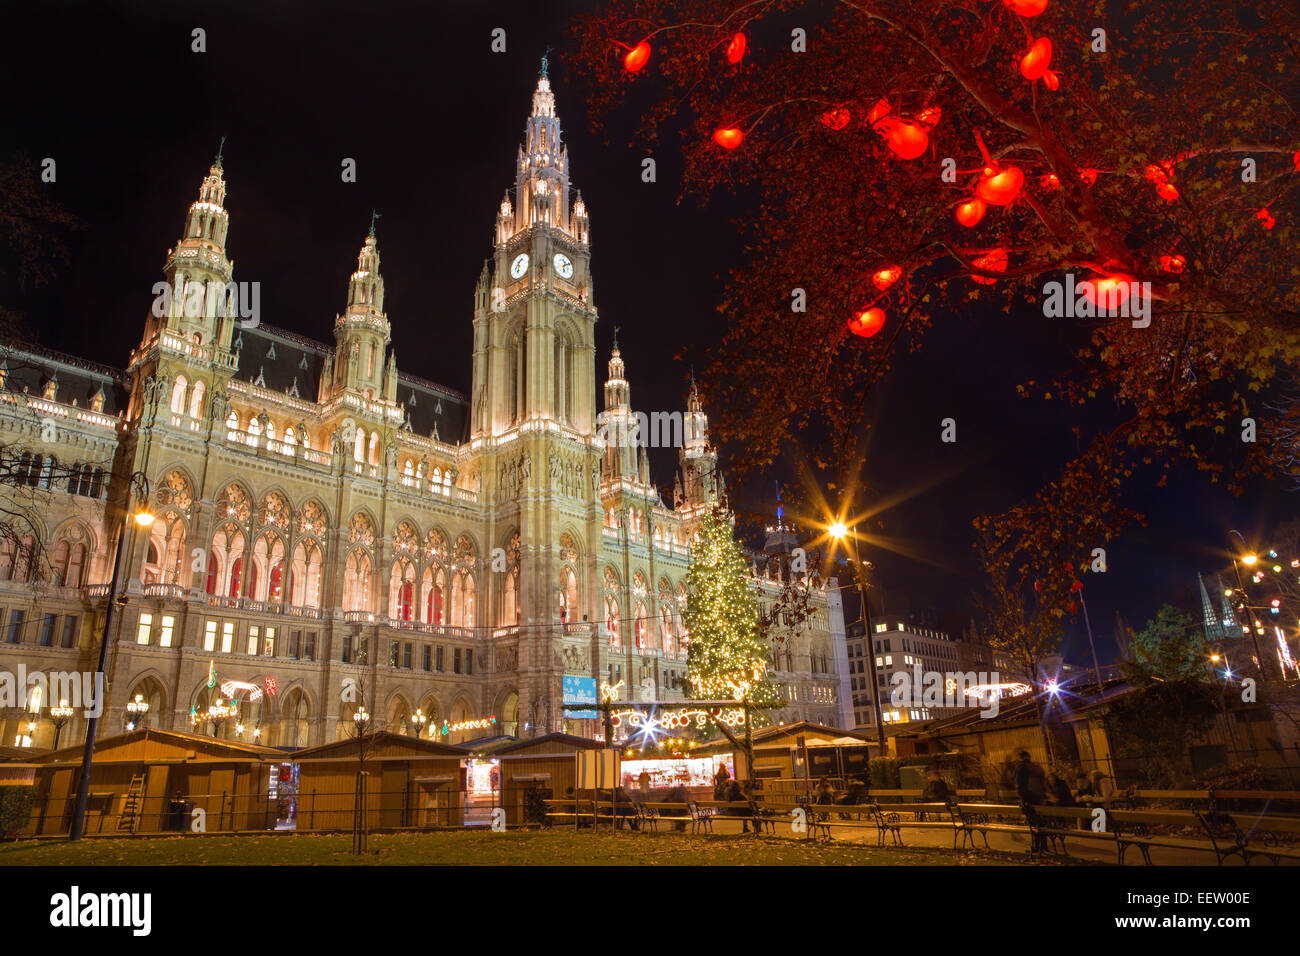 Wien - Turm des Rathauses und Weihnachten Dekoration Stockfoto